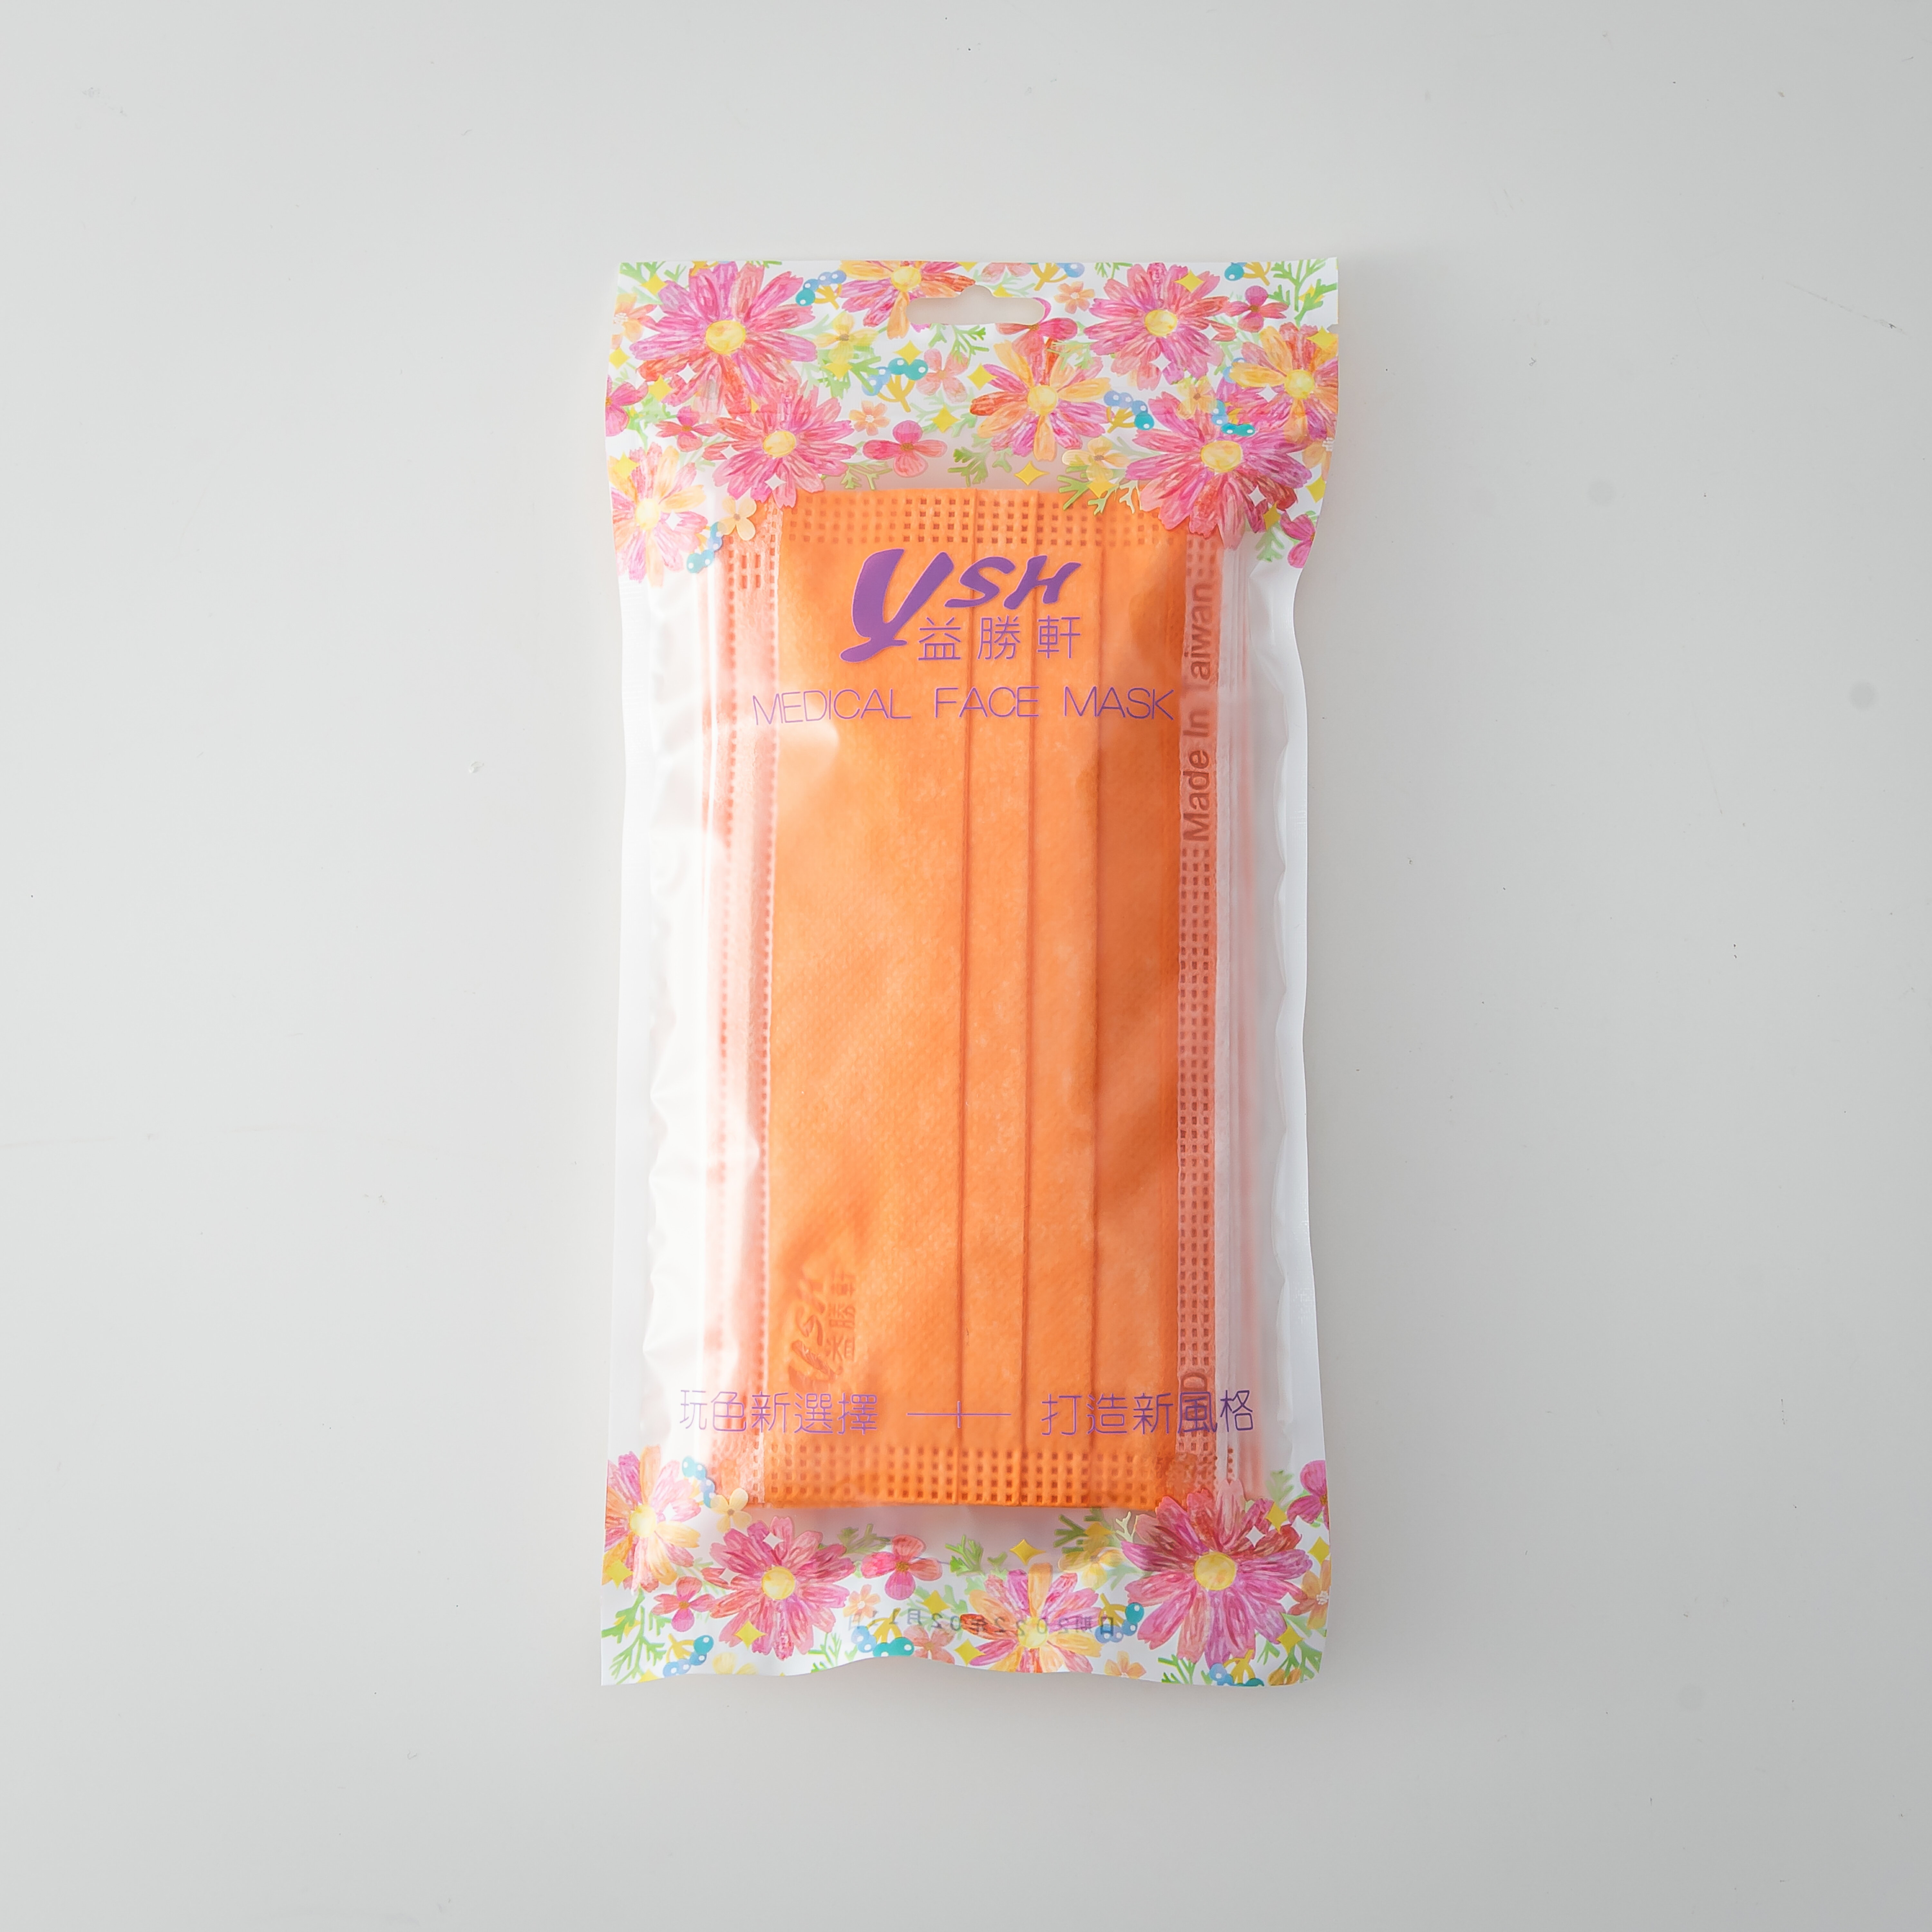 益勝軒 YSH 醫療口罩-艷澄橘 10入 MD雙鋼印 攜帶包